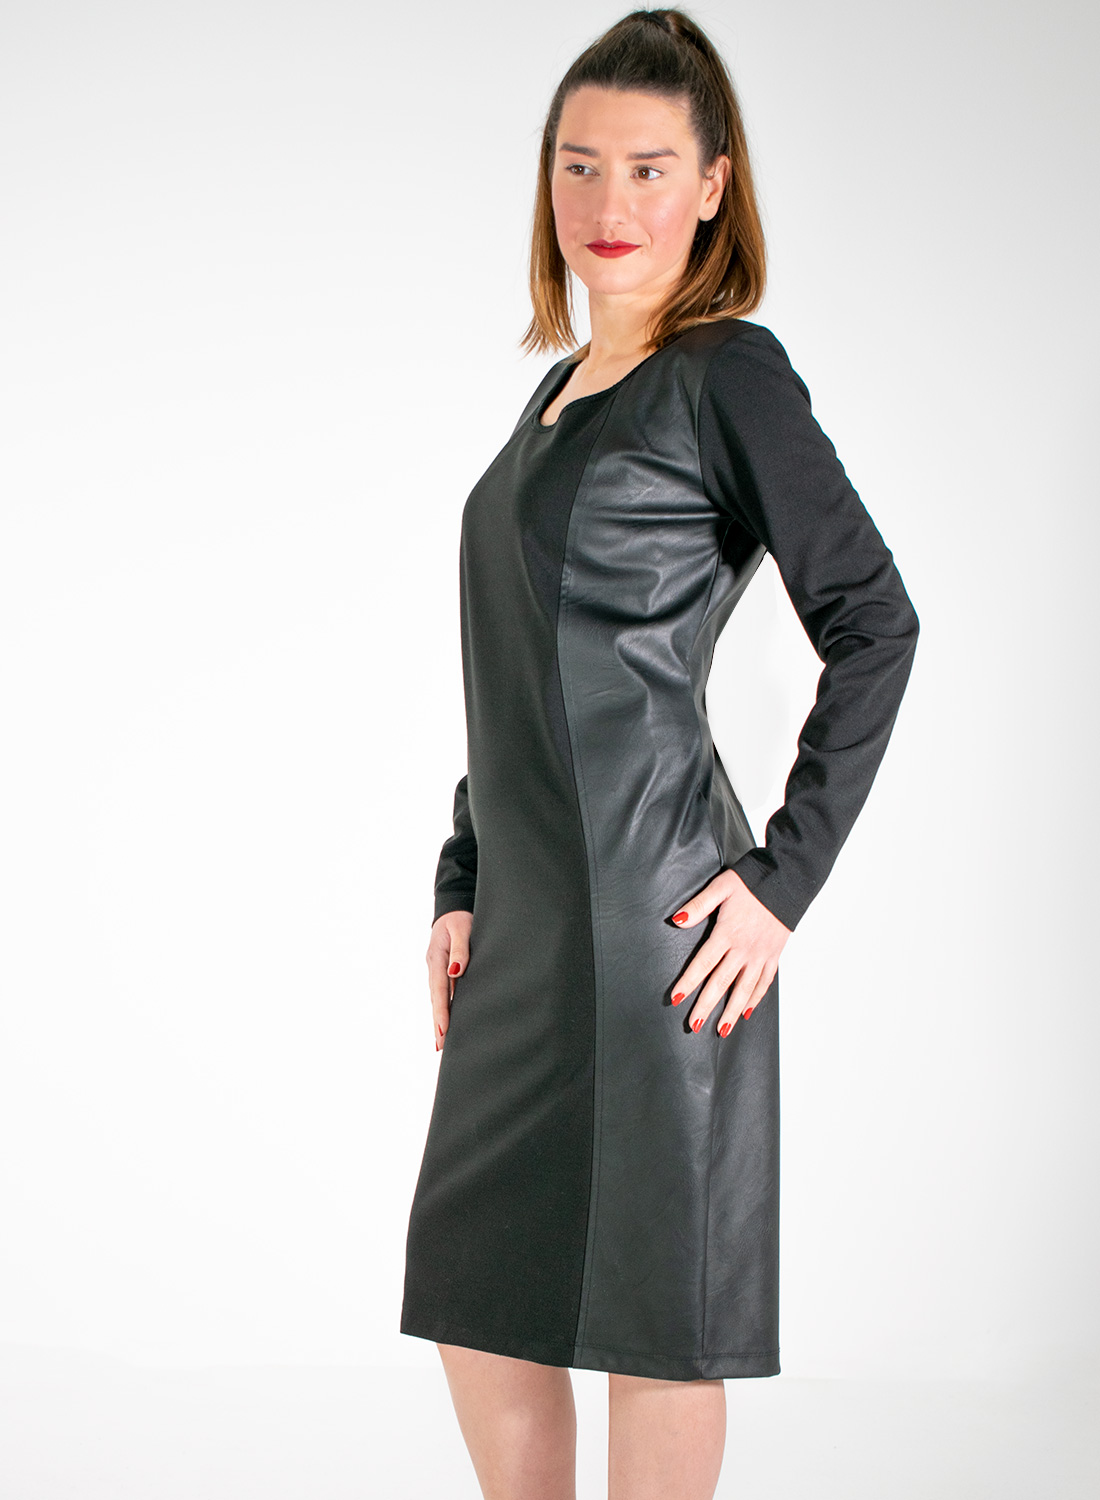 Ολόμαυρο θηλυκό φόρεμα με λεπτομέρειες δερματίνης